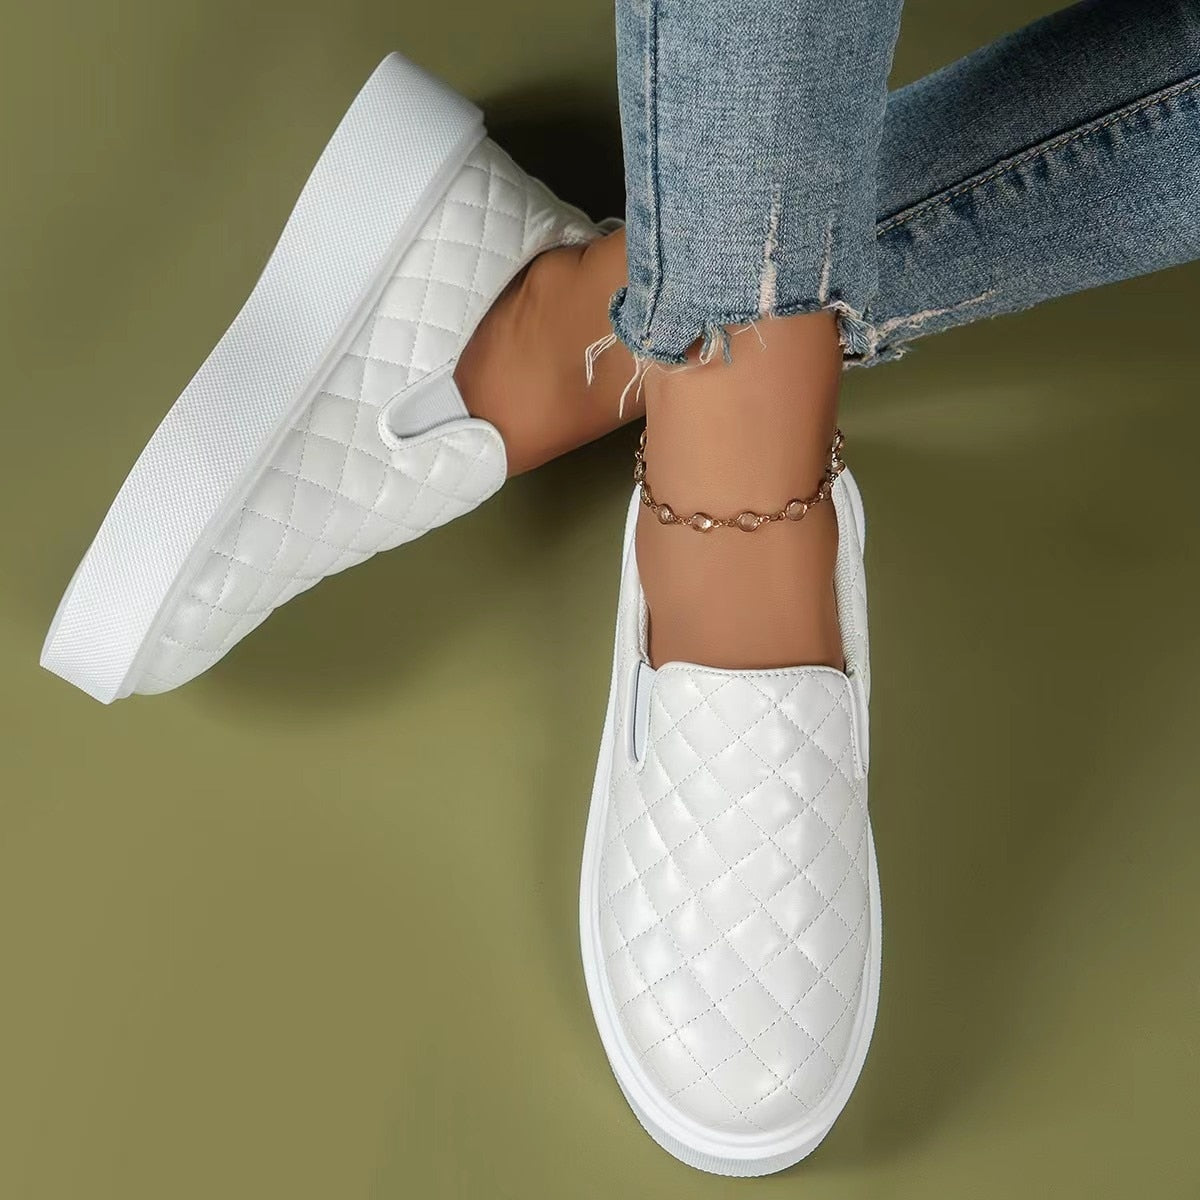 Slip-on Casual Lightweight Loafer Platform Shoes